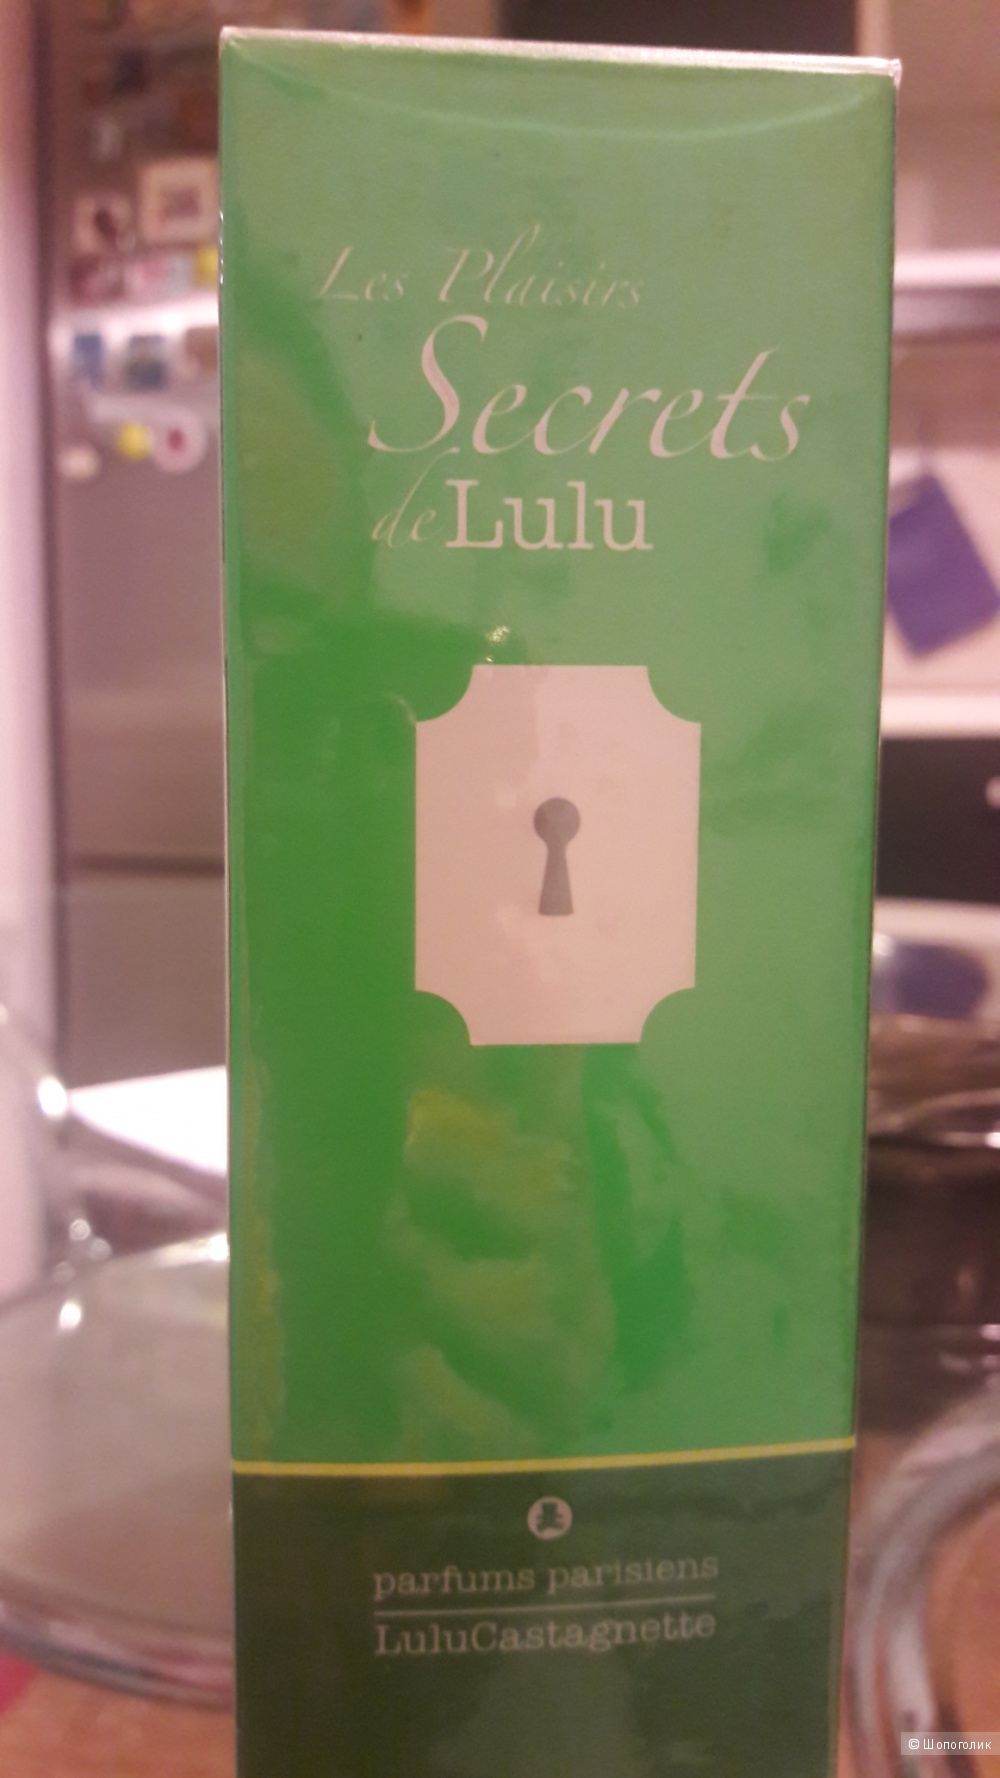 Eau de parfum "Secrets de Lulu" Lulu Castagnette, 50 ml